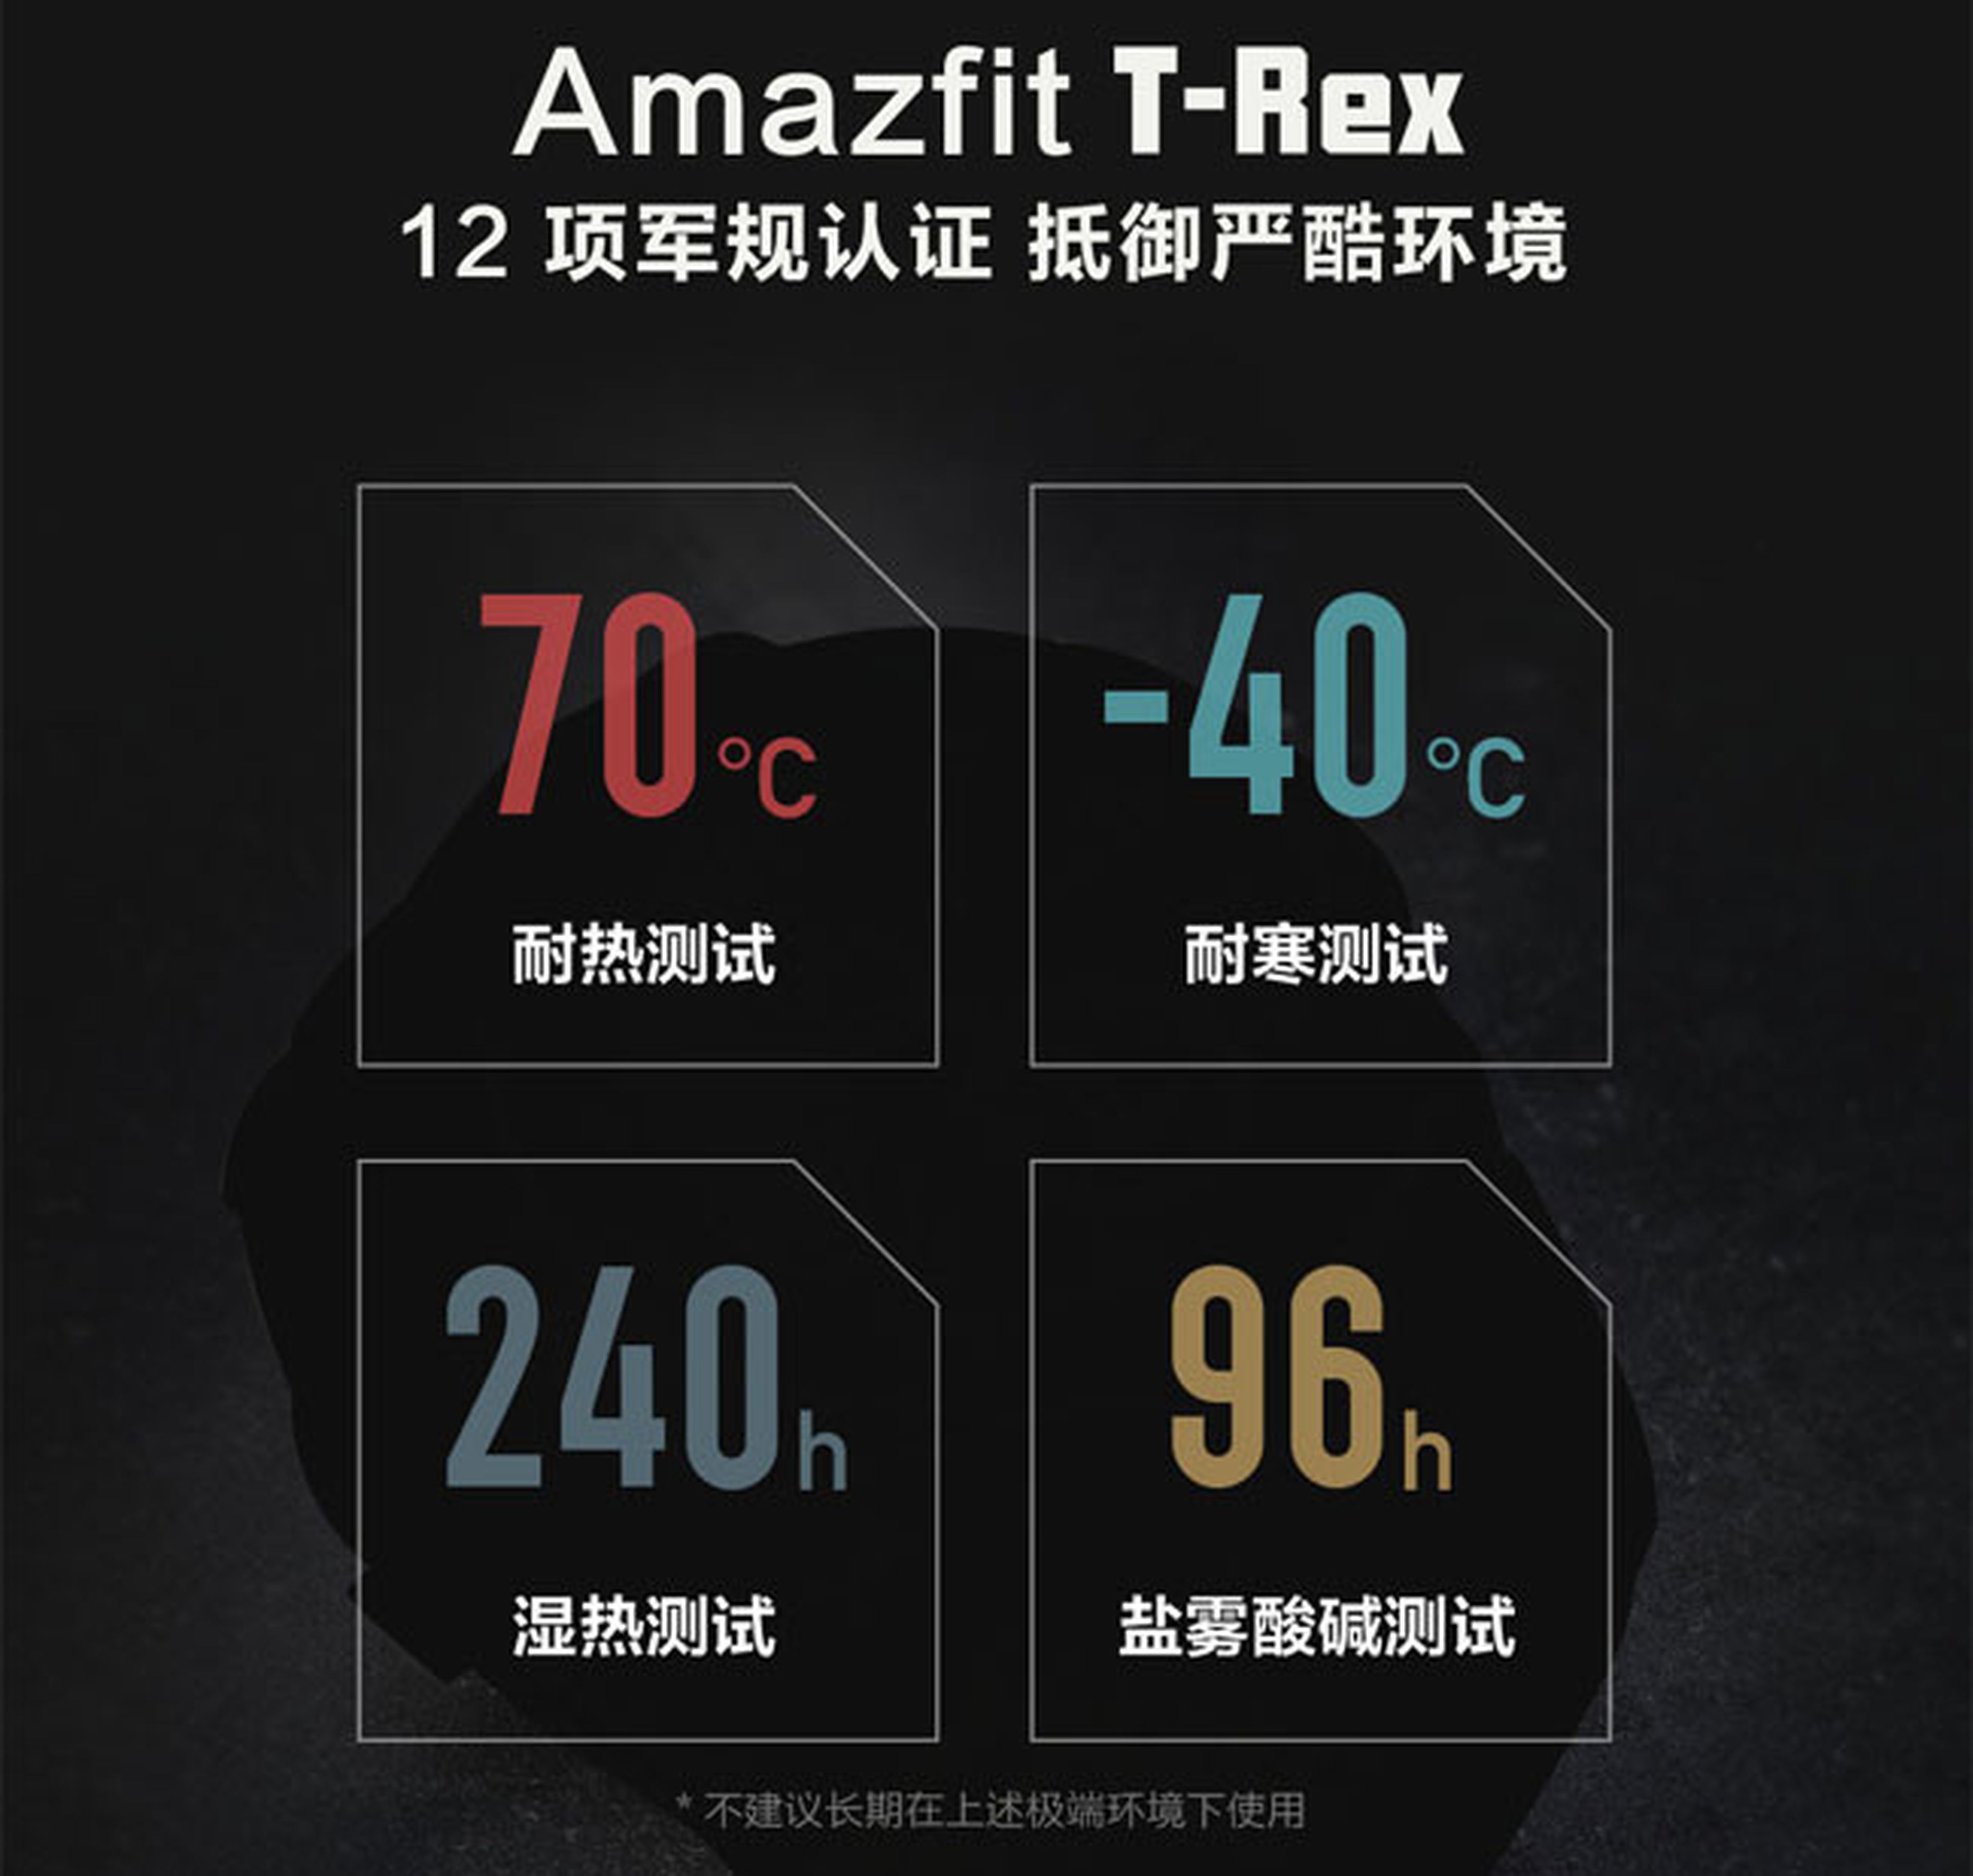 Amazfit T-Rex